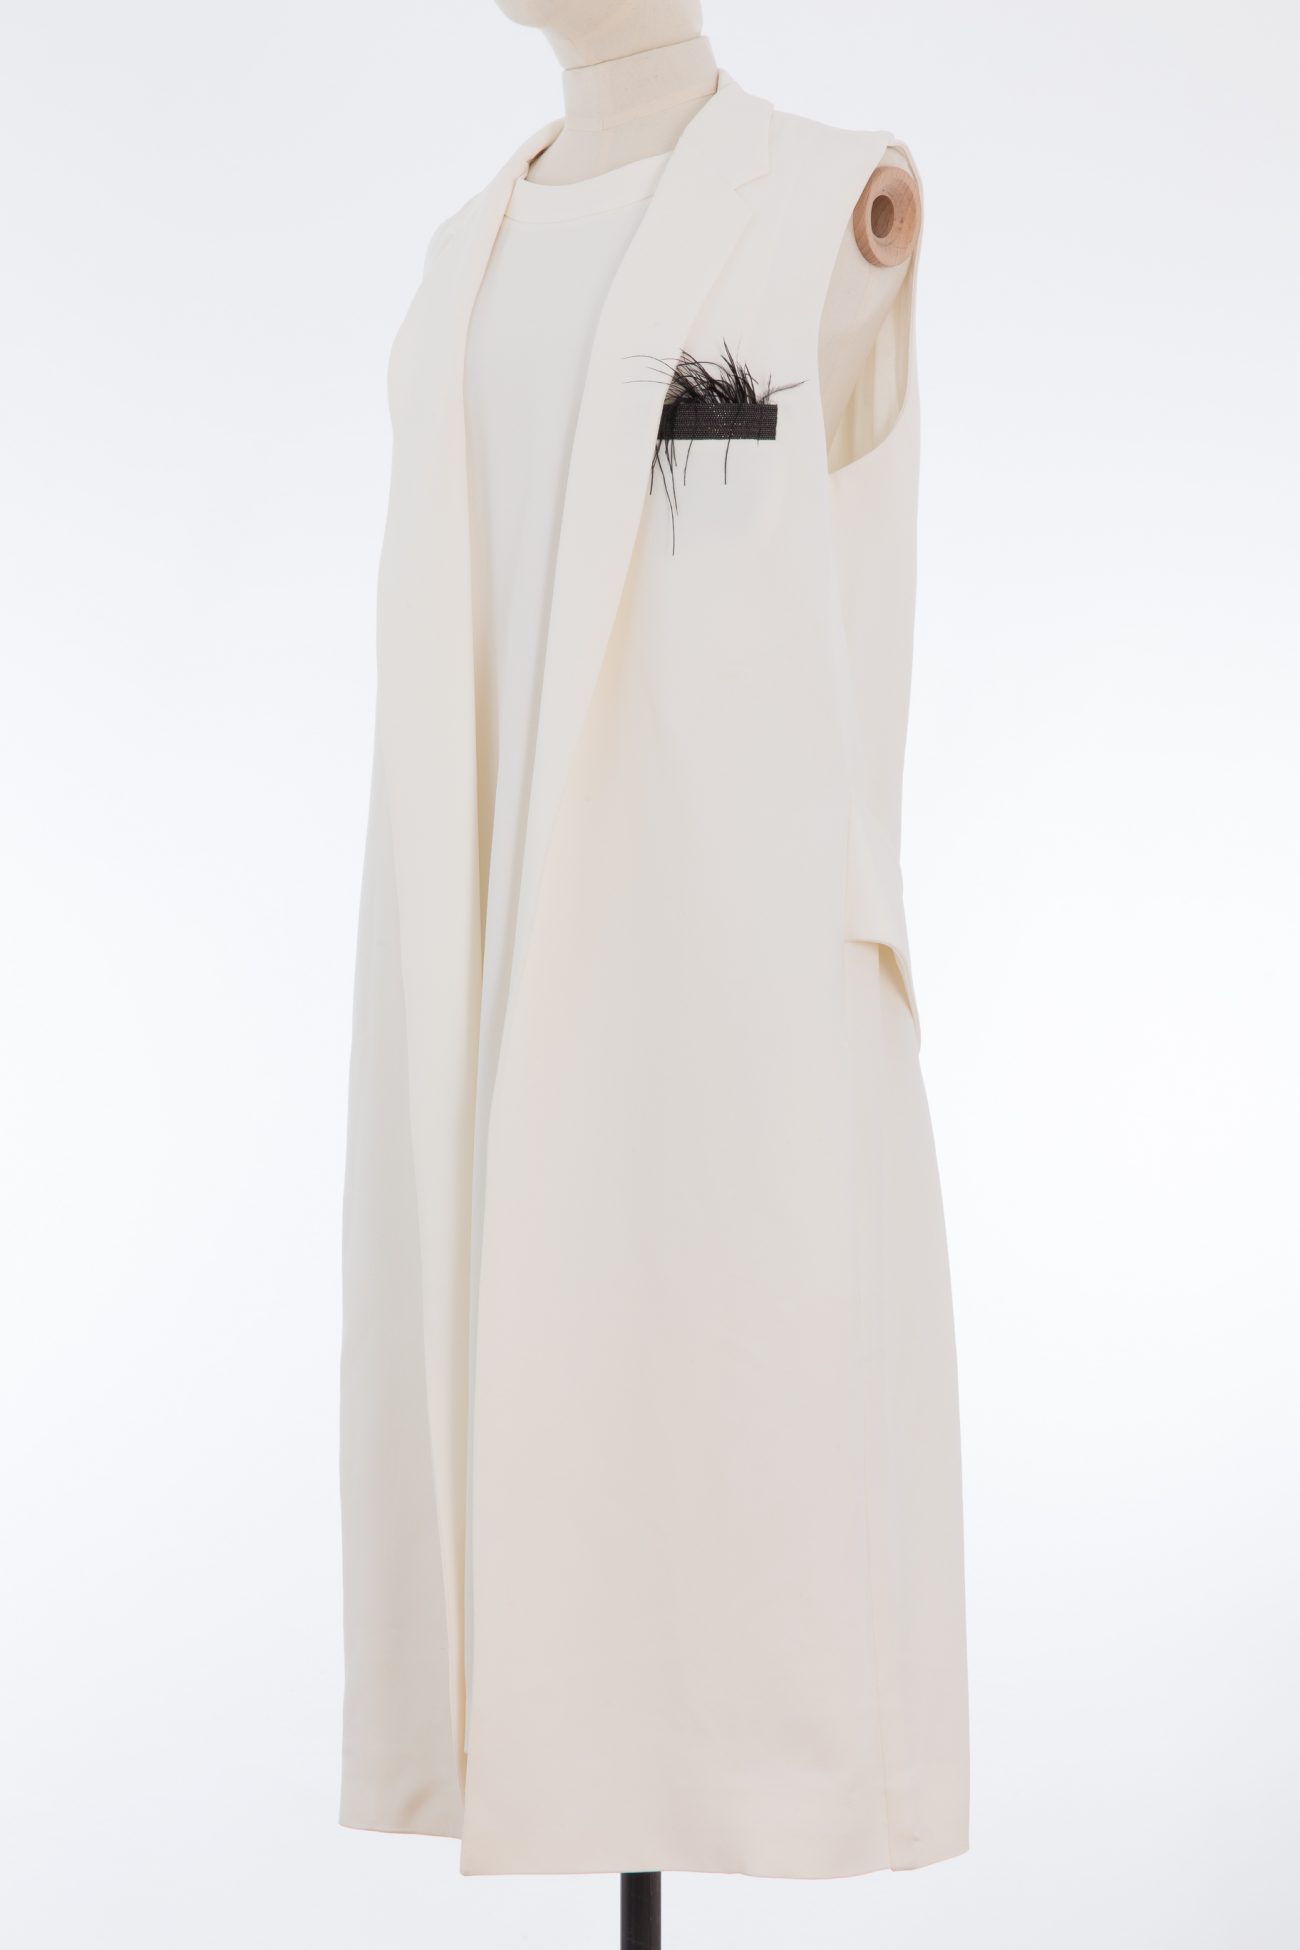 Brunello Cucinelli Feather-trimmed monili embellished silk crepe vest dress